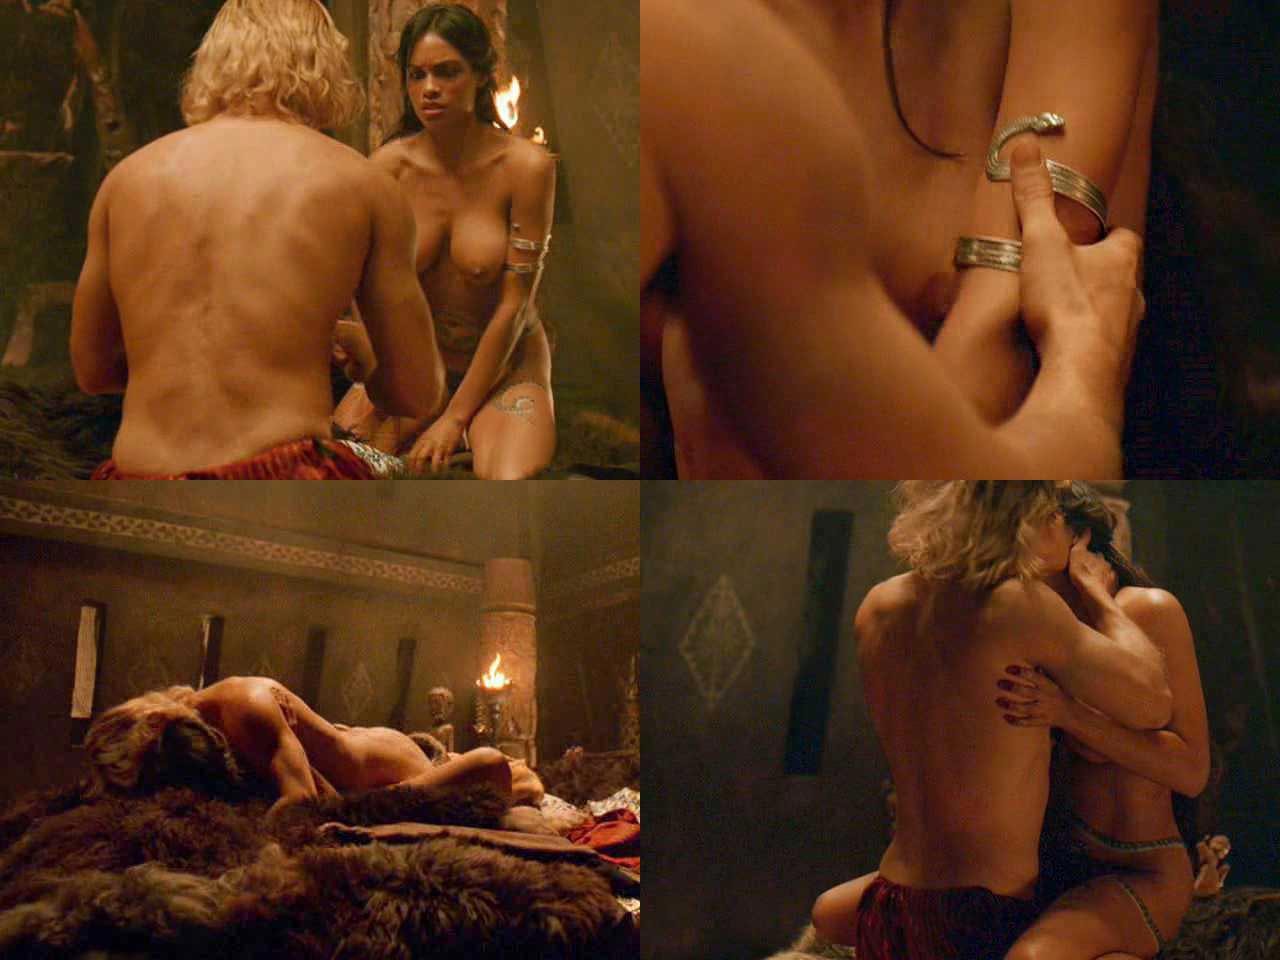 Rosario dawson montre ses seins nus dans une scène de sexe
 #75388321